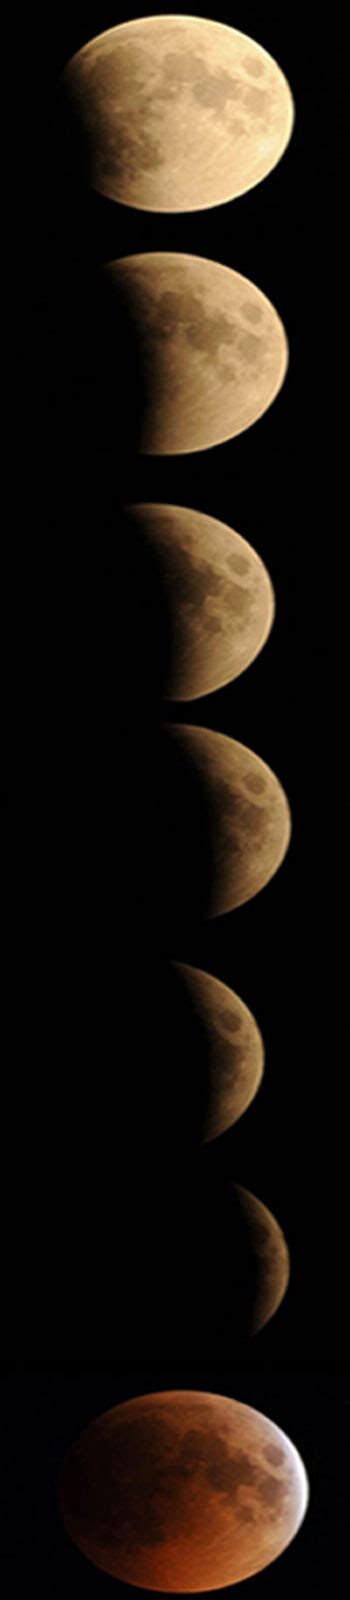 จันทรุปราคา (lunar eclipse) จันทรุปราคา หรือ จันทรคราส เกิดจาก. ประมวลภาพจันทรุปราคา